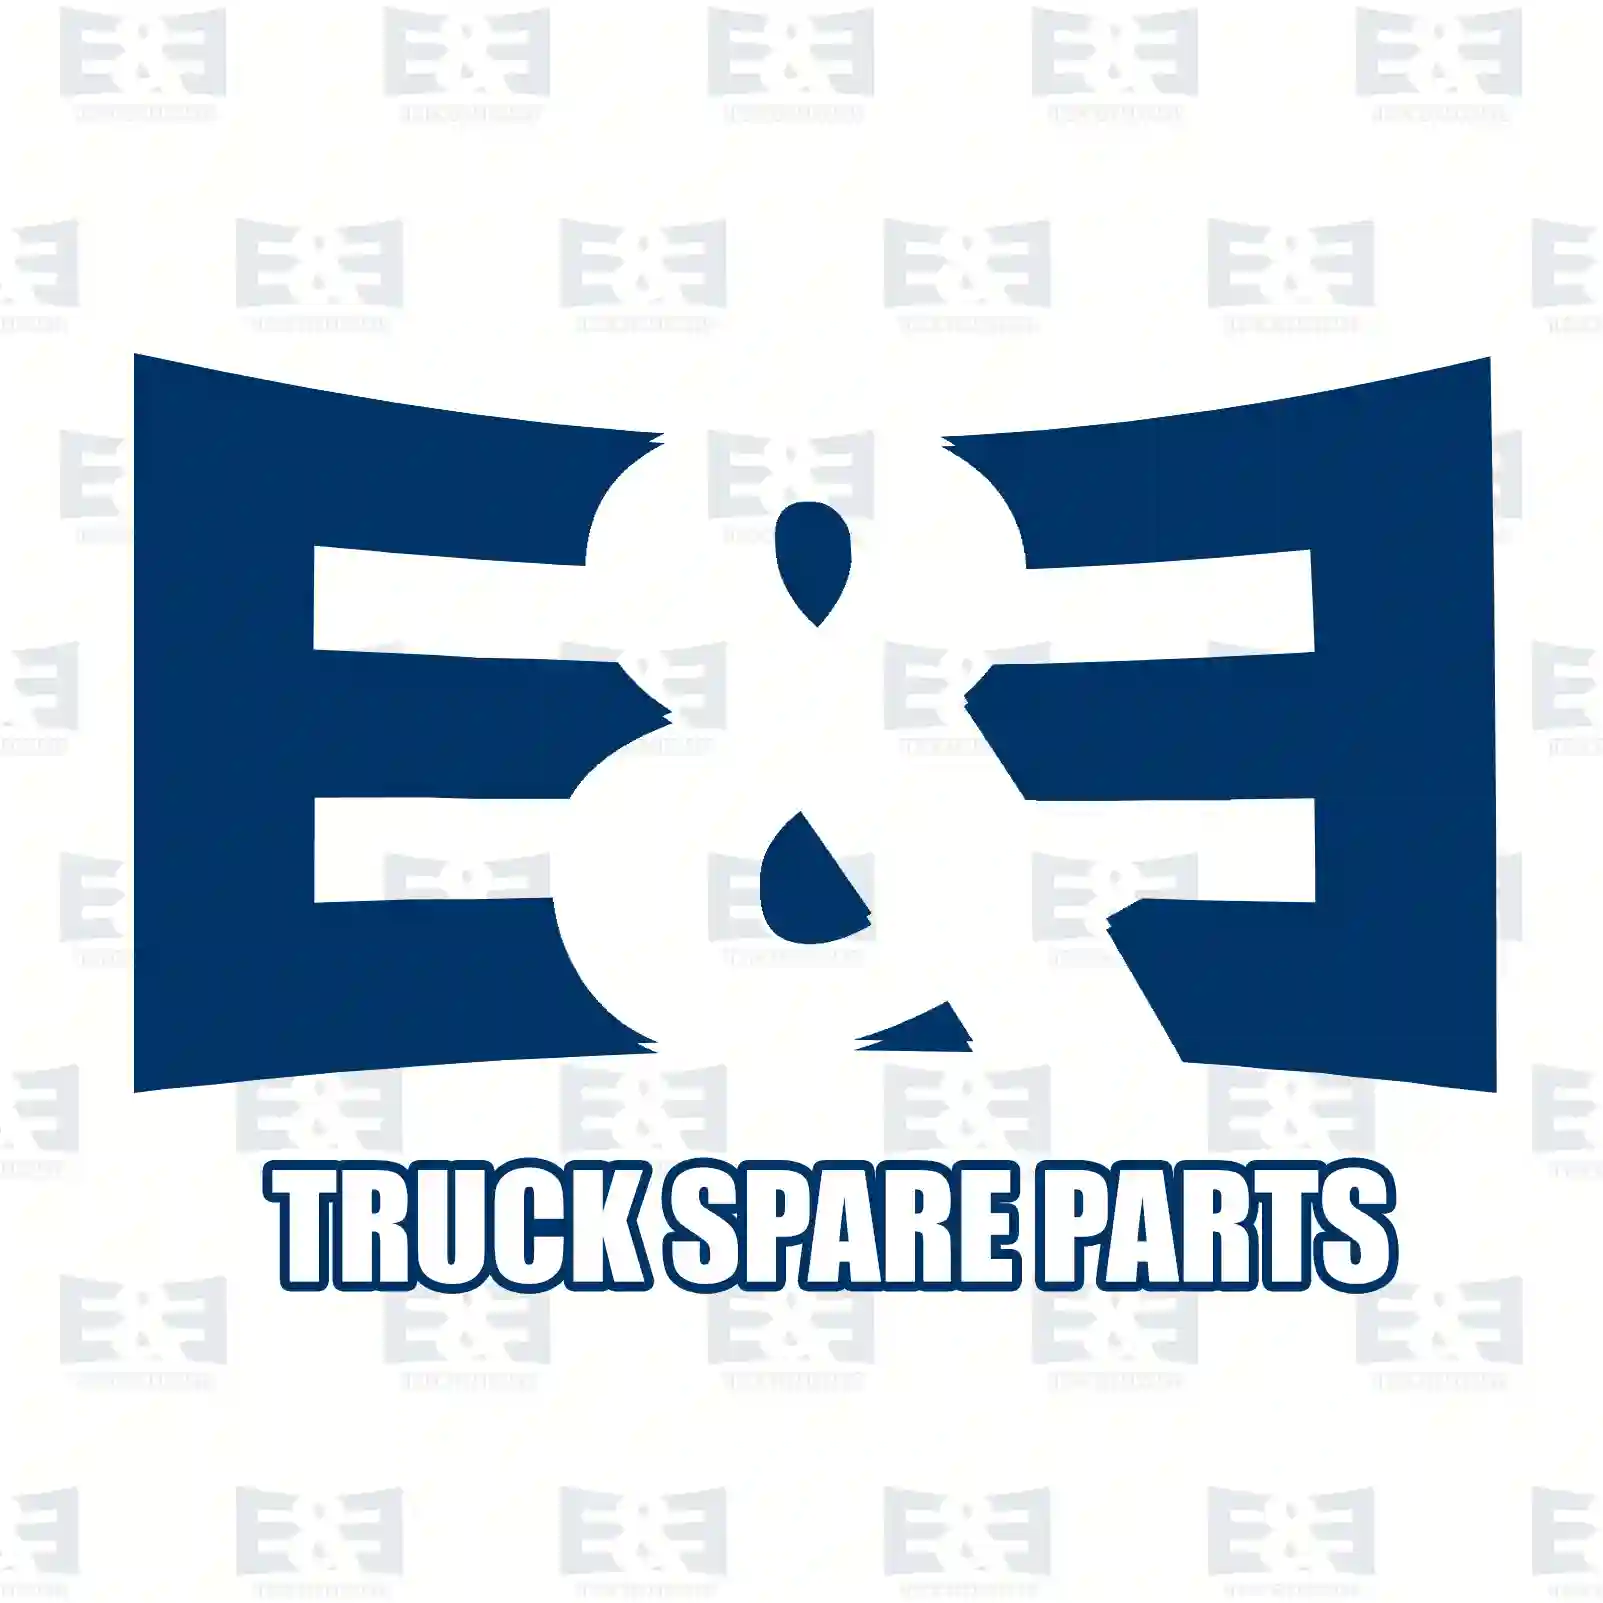 Solenoid valve, 2E2283044, 0013270625, 0013271025, 0013271325 ||  2E2283044 E&E Truck Spare Parts | Truck Spare Parts, Auotomotive Spare Parts Solenoid valve, 2E2283044, 0013270625, 0013271025, 0013271325 ||  2E2283044 E&E Truck Spare Parts | Truck Spare Parts, Auotomotive Spare Parts